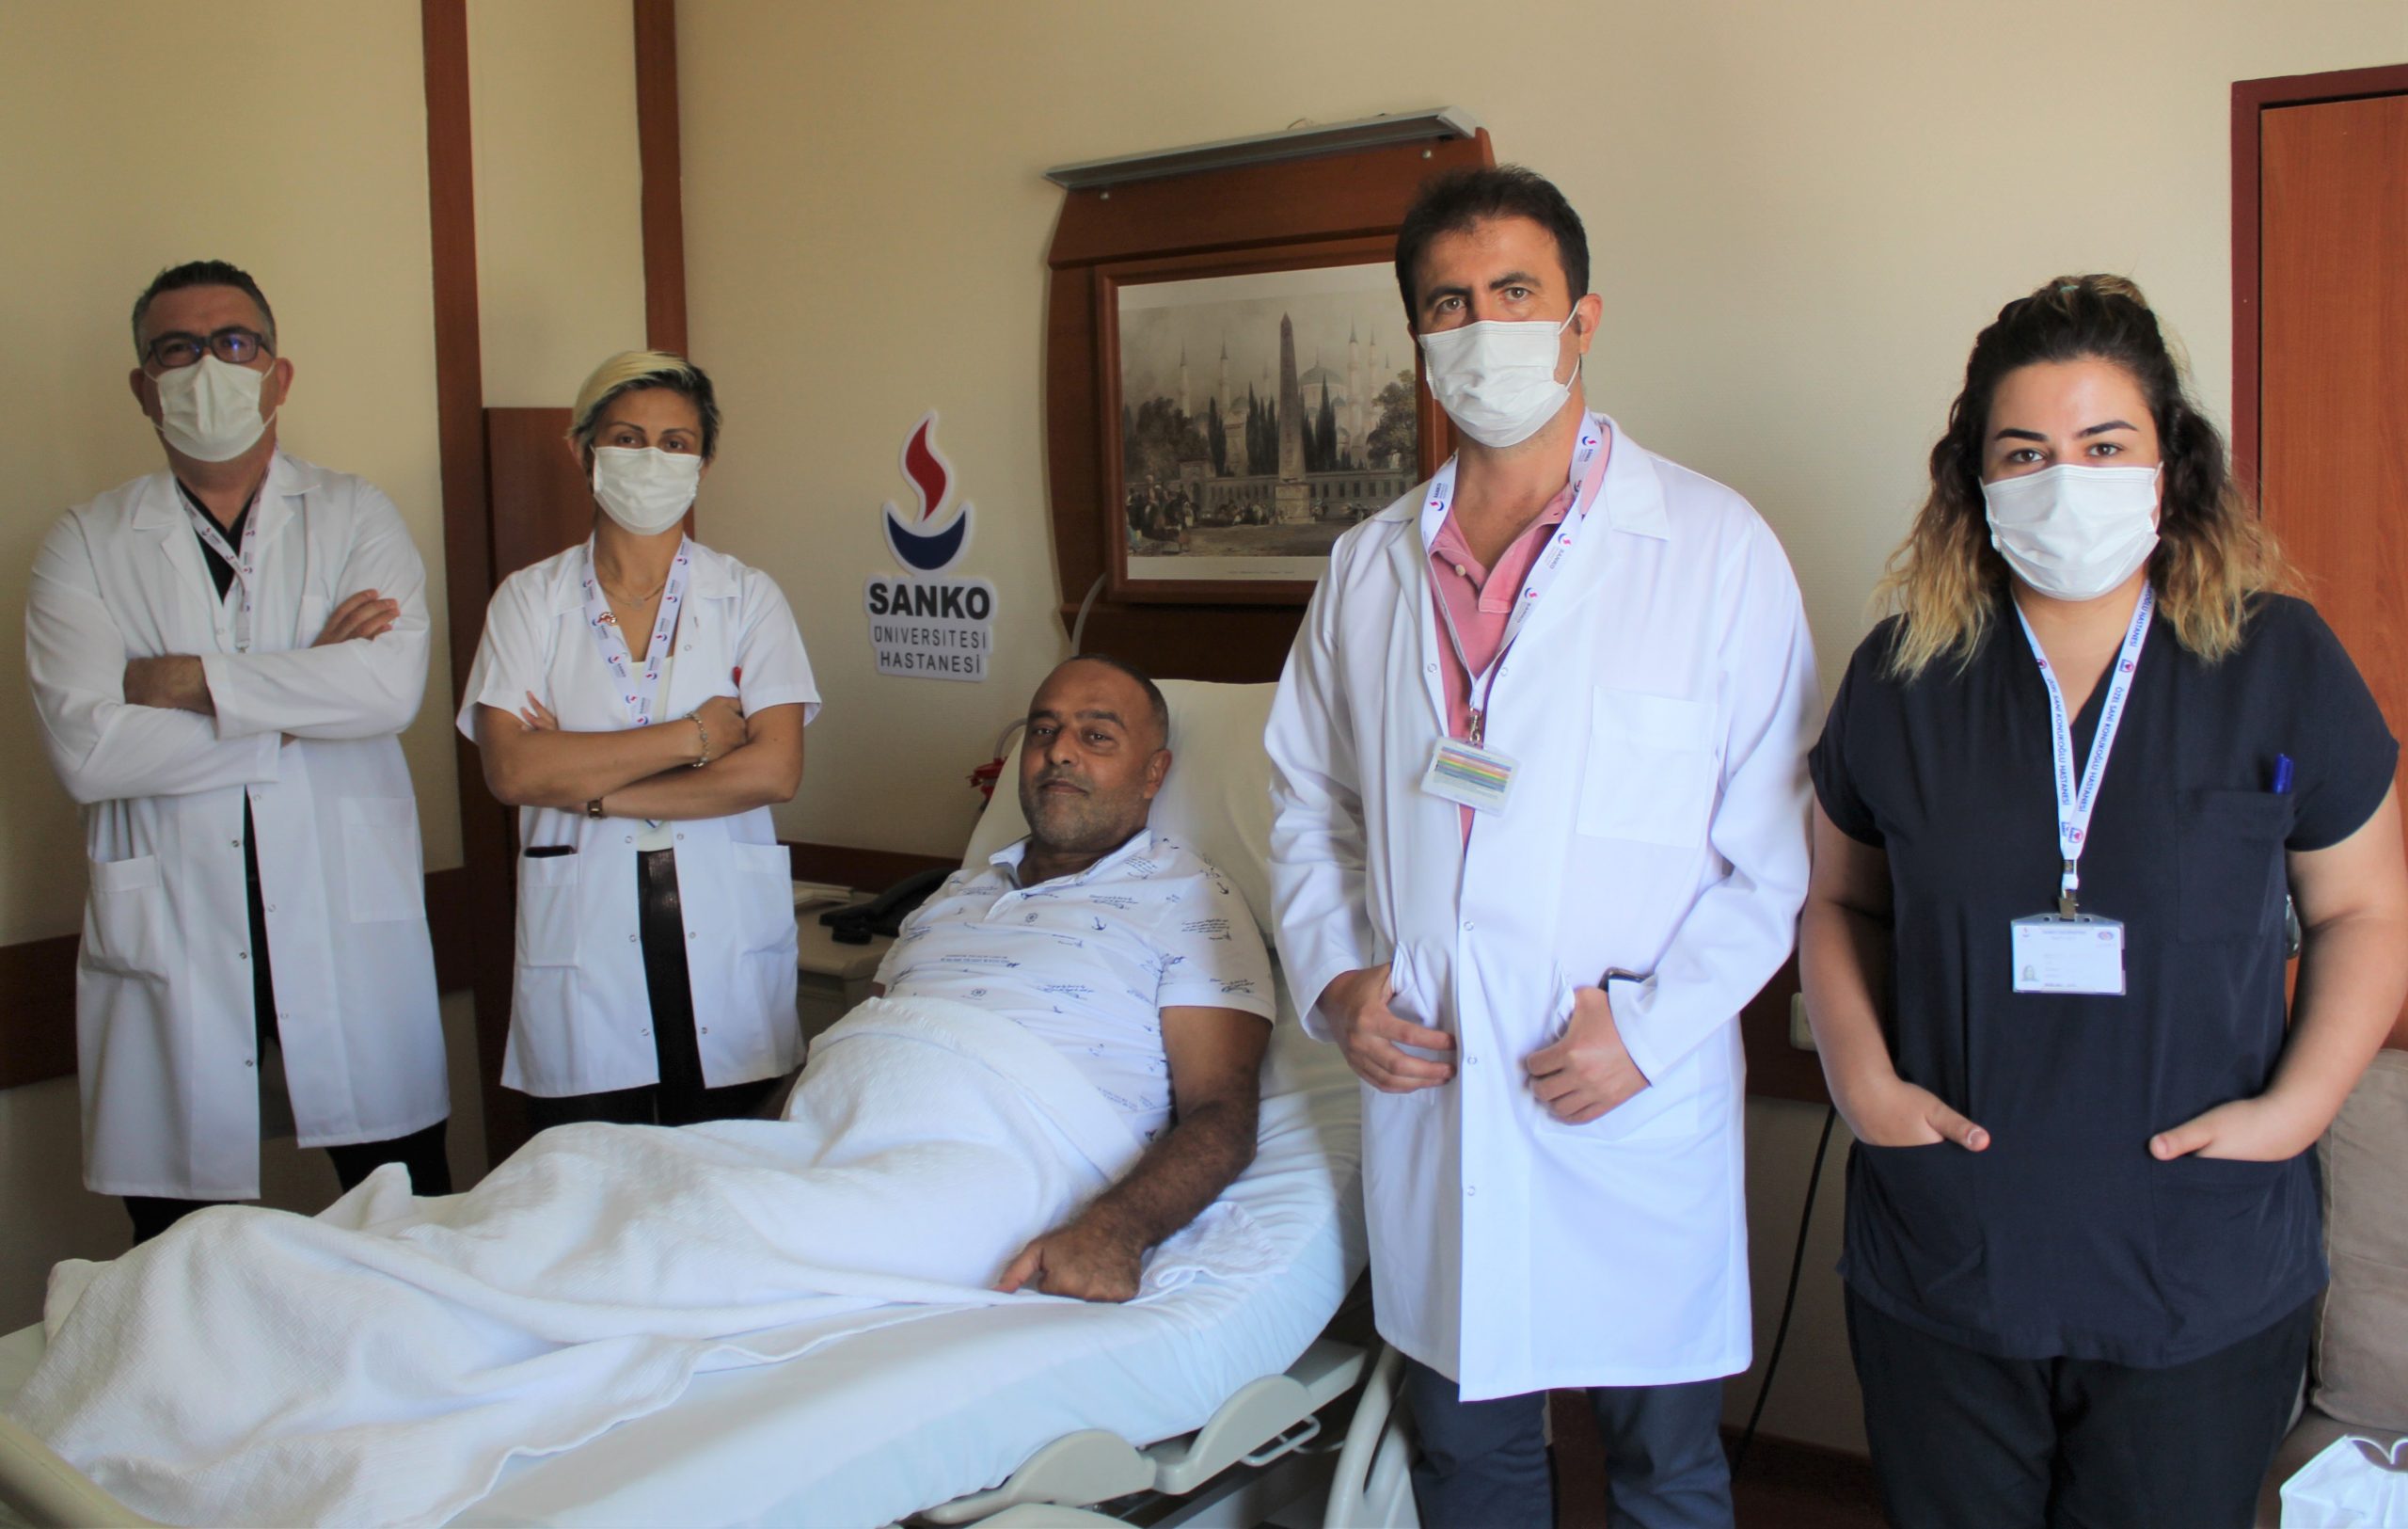 SANKO Üniversitesi Hastanesin Gaziantep'te Bir İlki Gerçekleştirdi